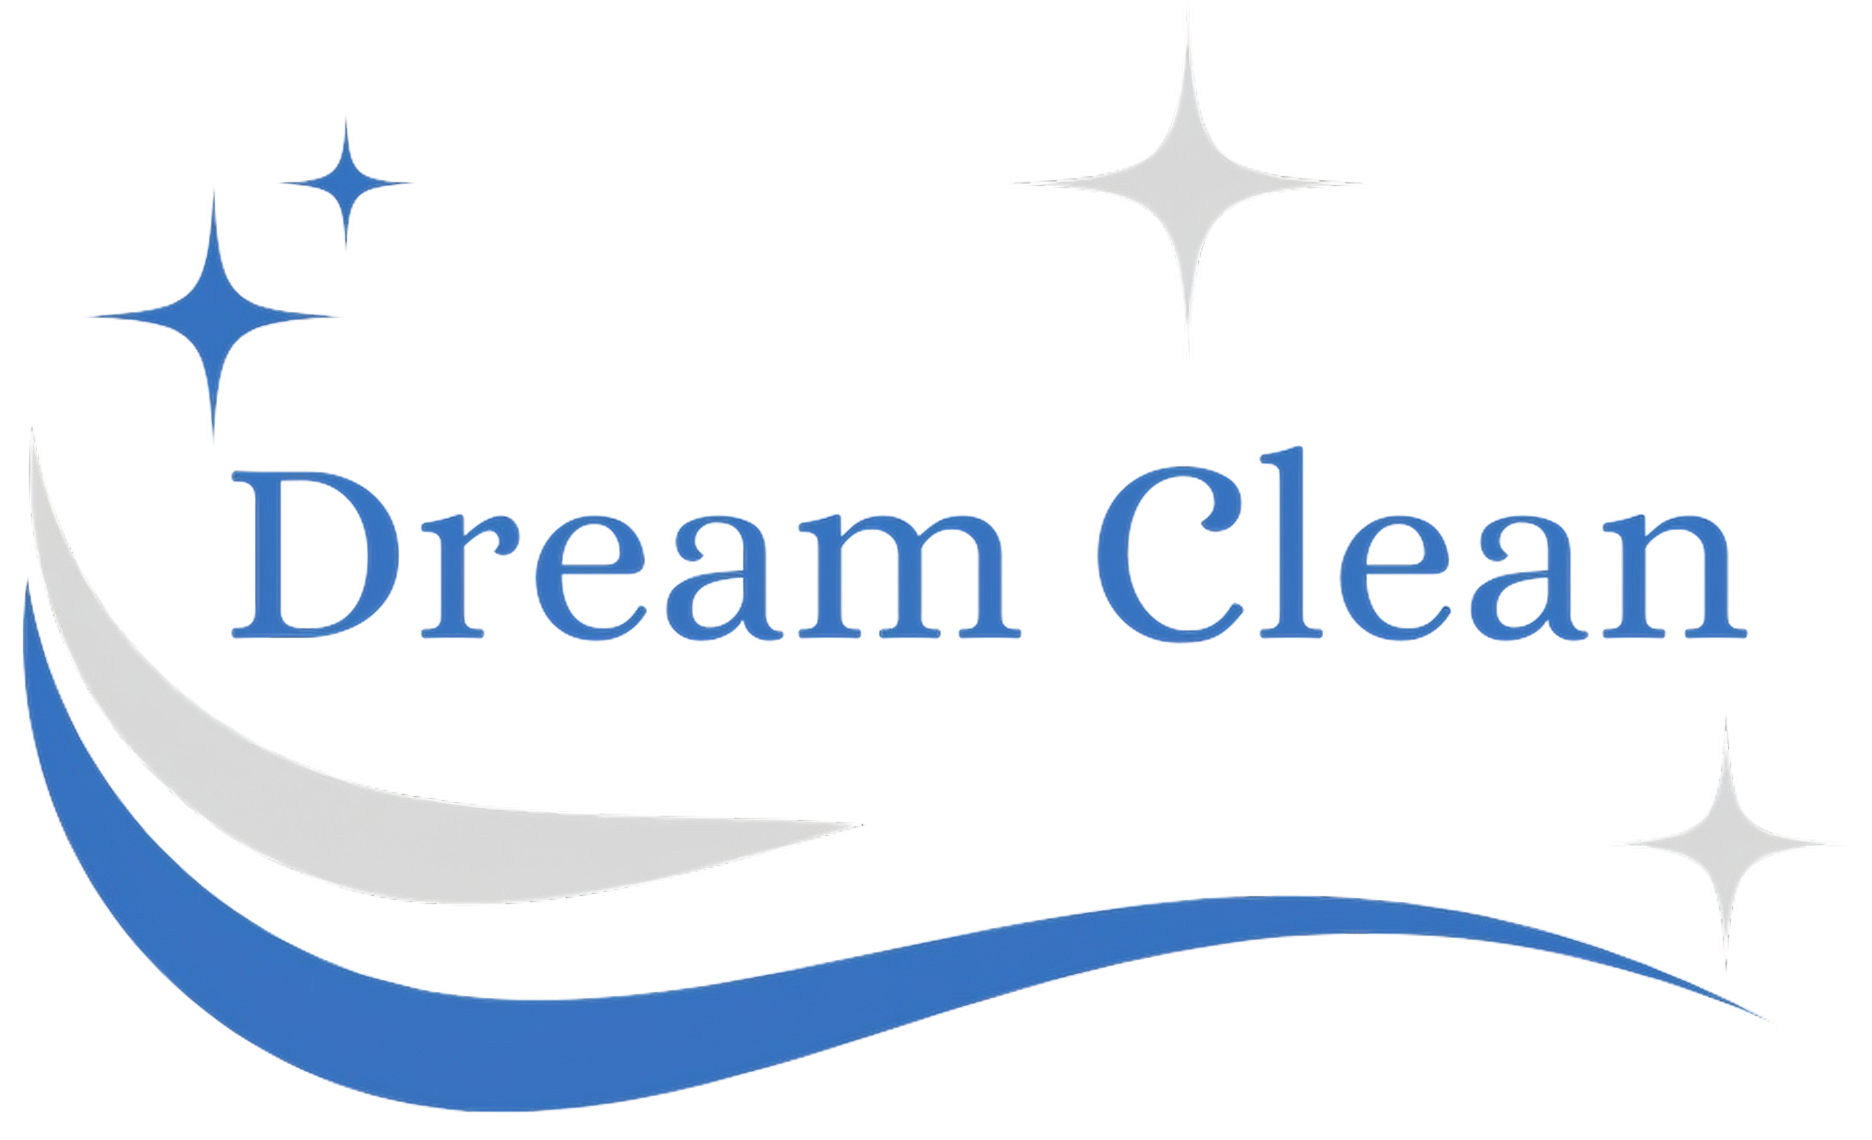 DreamClean